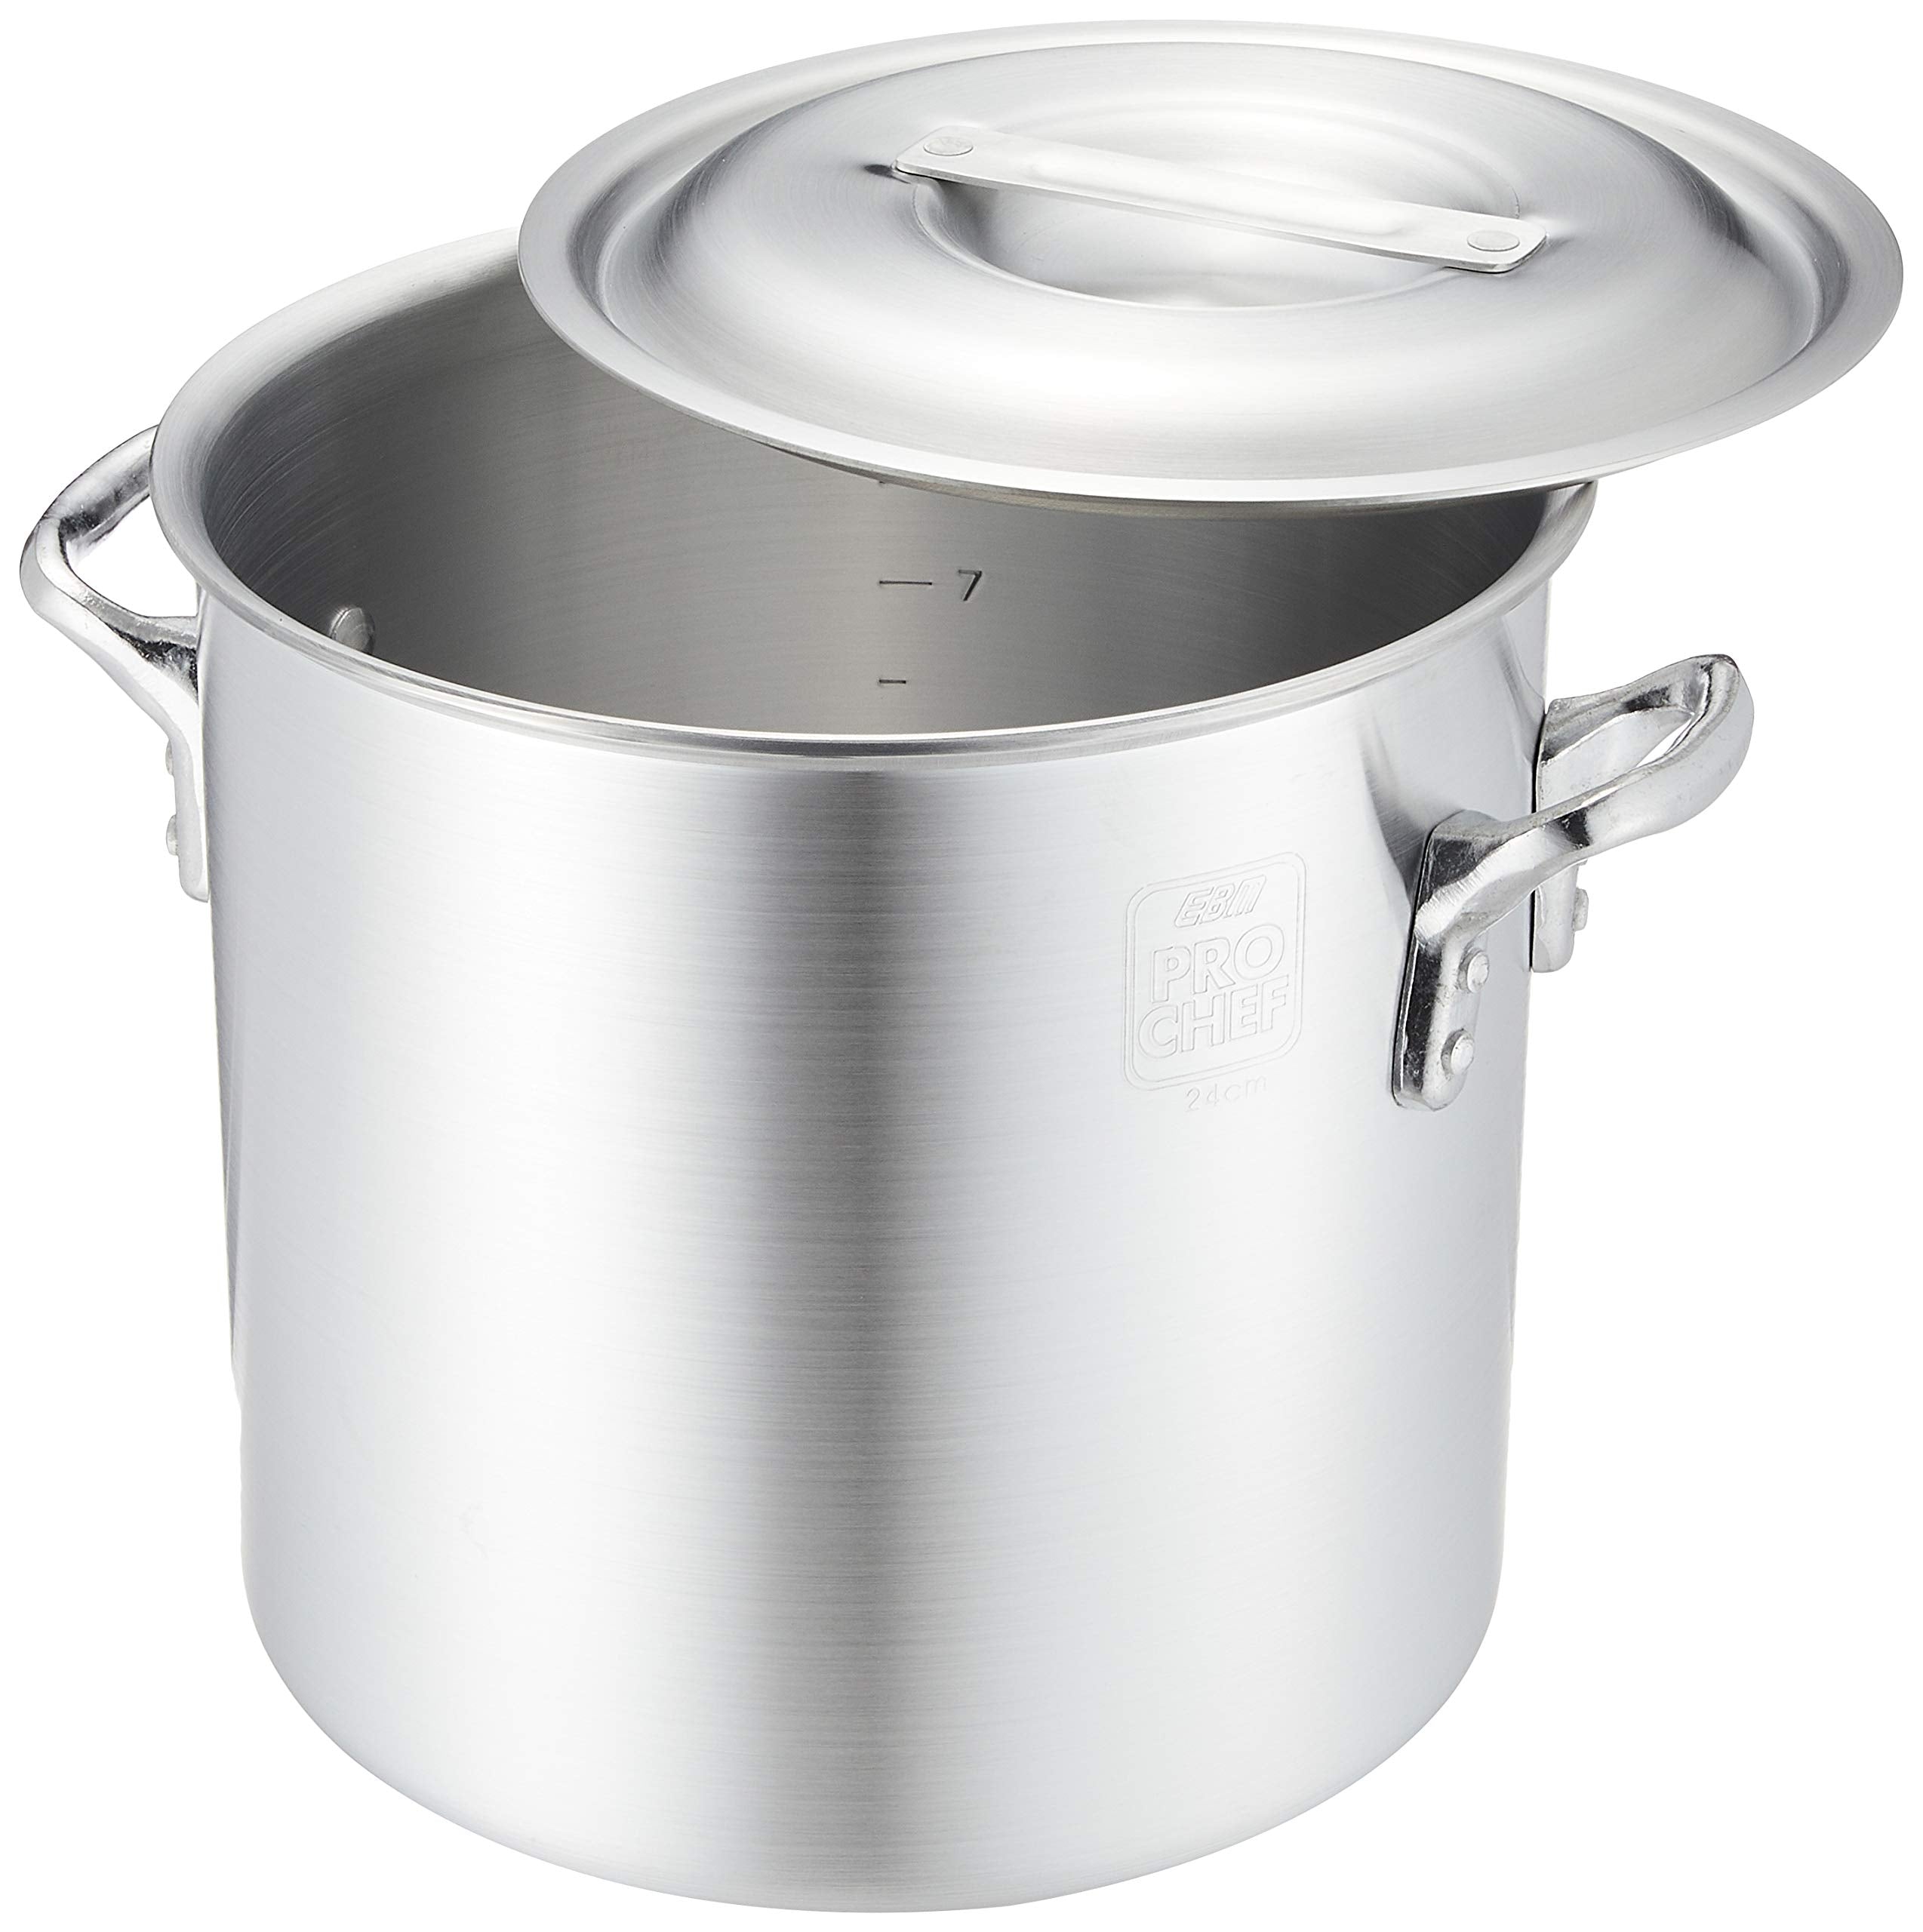 Ebm 24cm Aluminum Professional Chef Pot